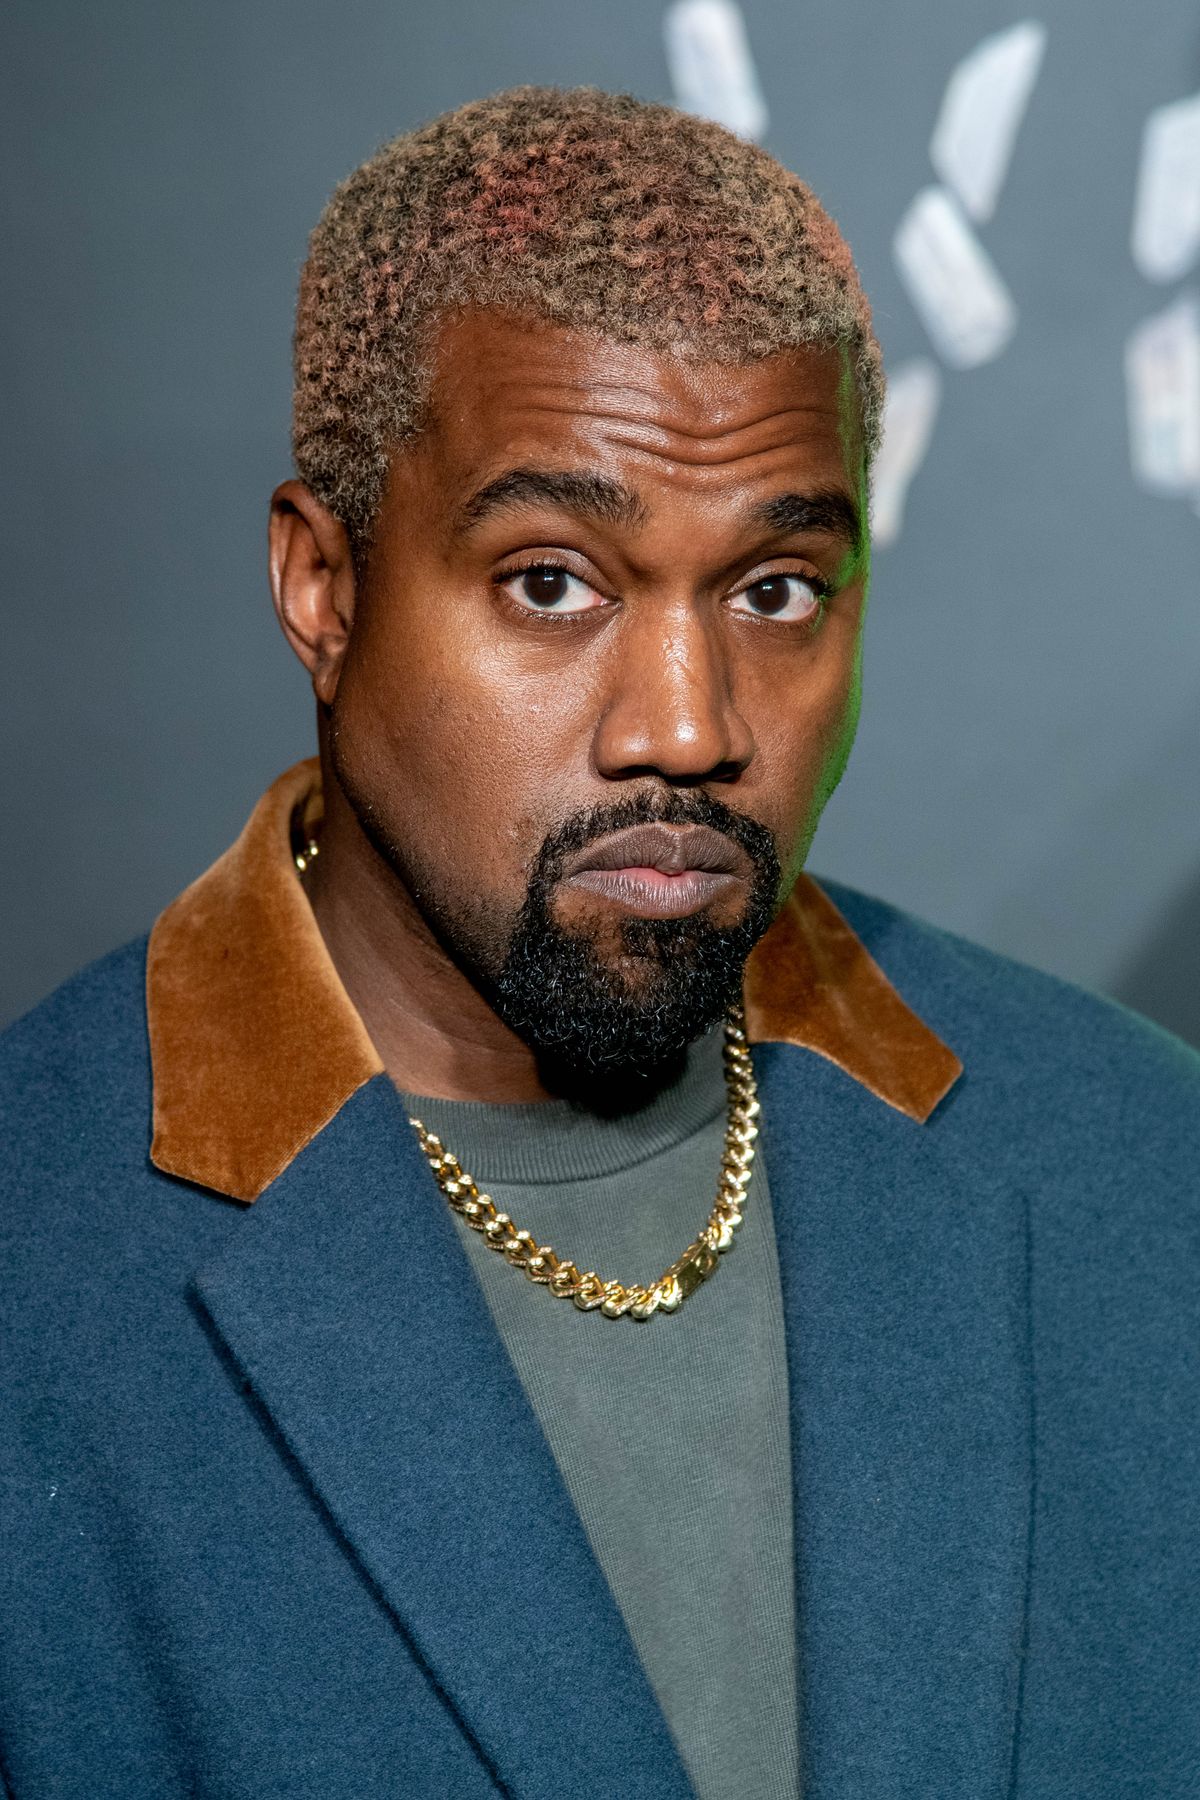 Kanye West, Hip Hop Wiki